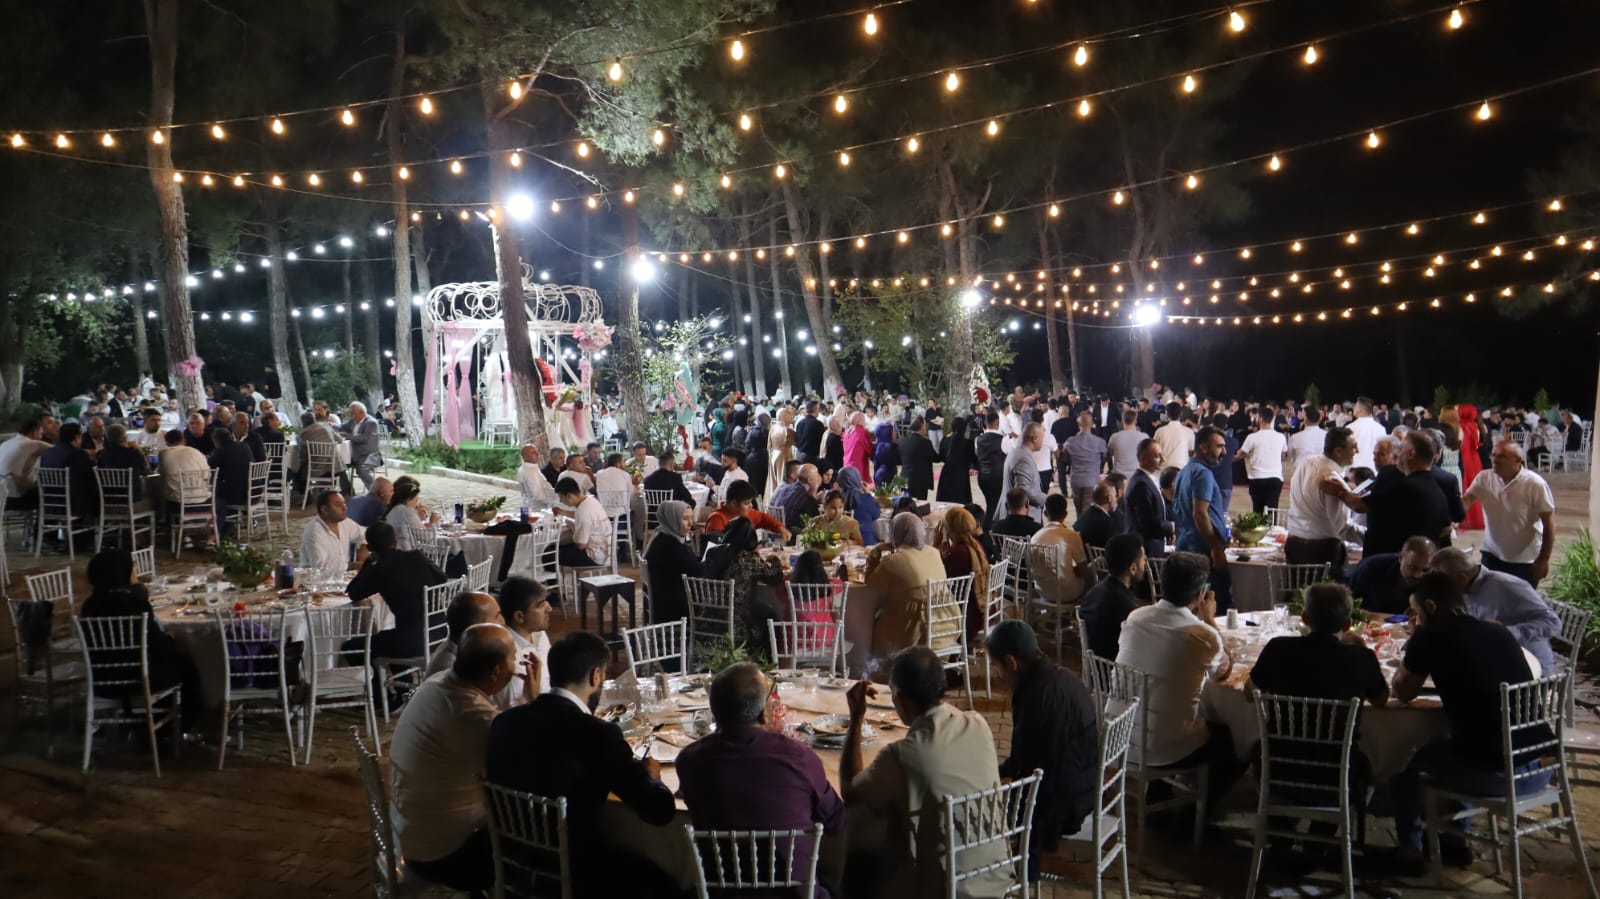 İş ve sivil toplum camiasını buluşturan düğün: Altuğlar ailesinin mutlu günü